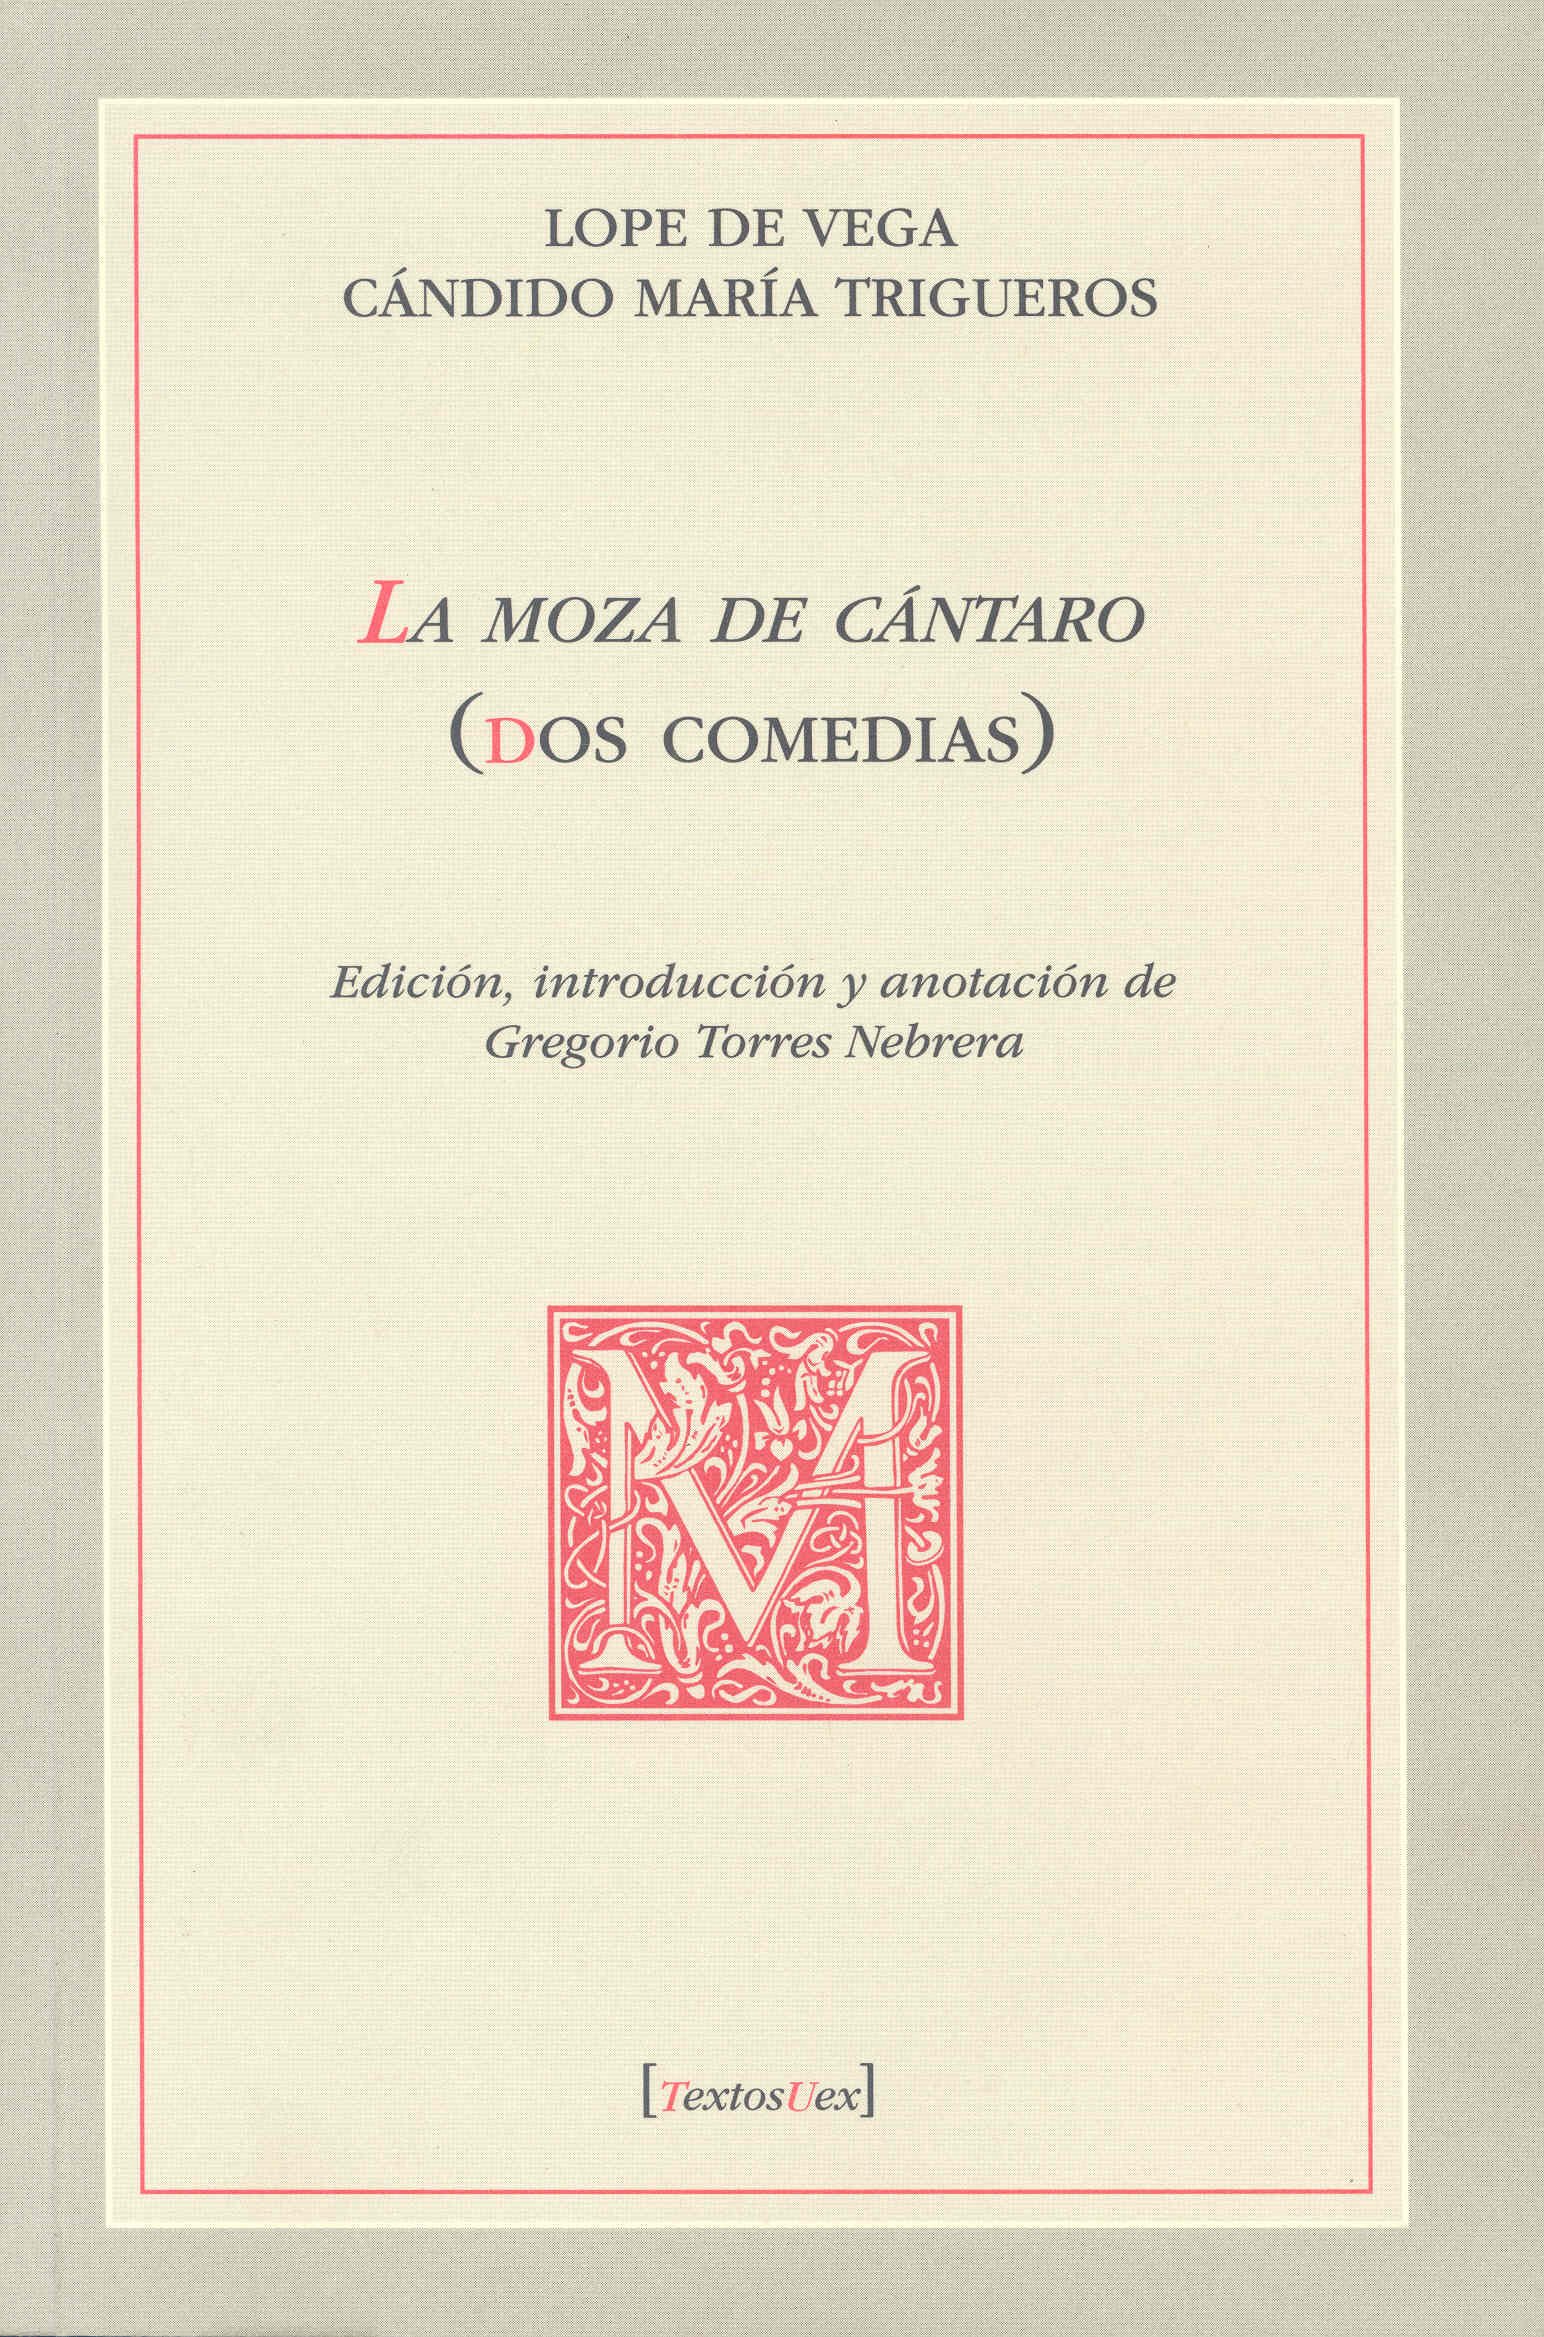 Imagen de portada del libro La Moza de Cántaros (dos comedias)